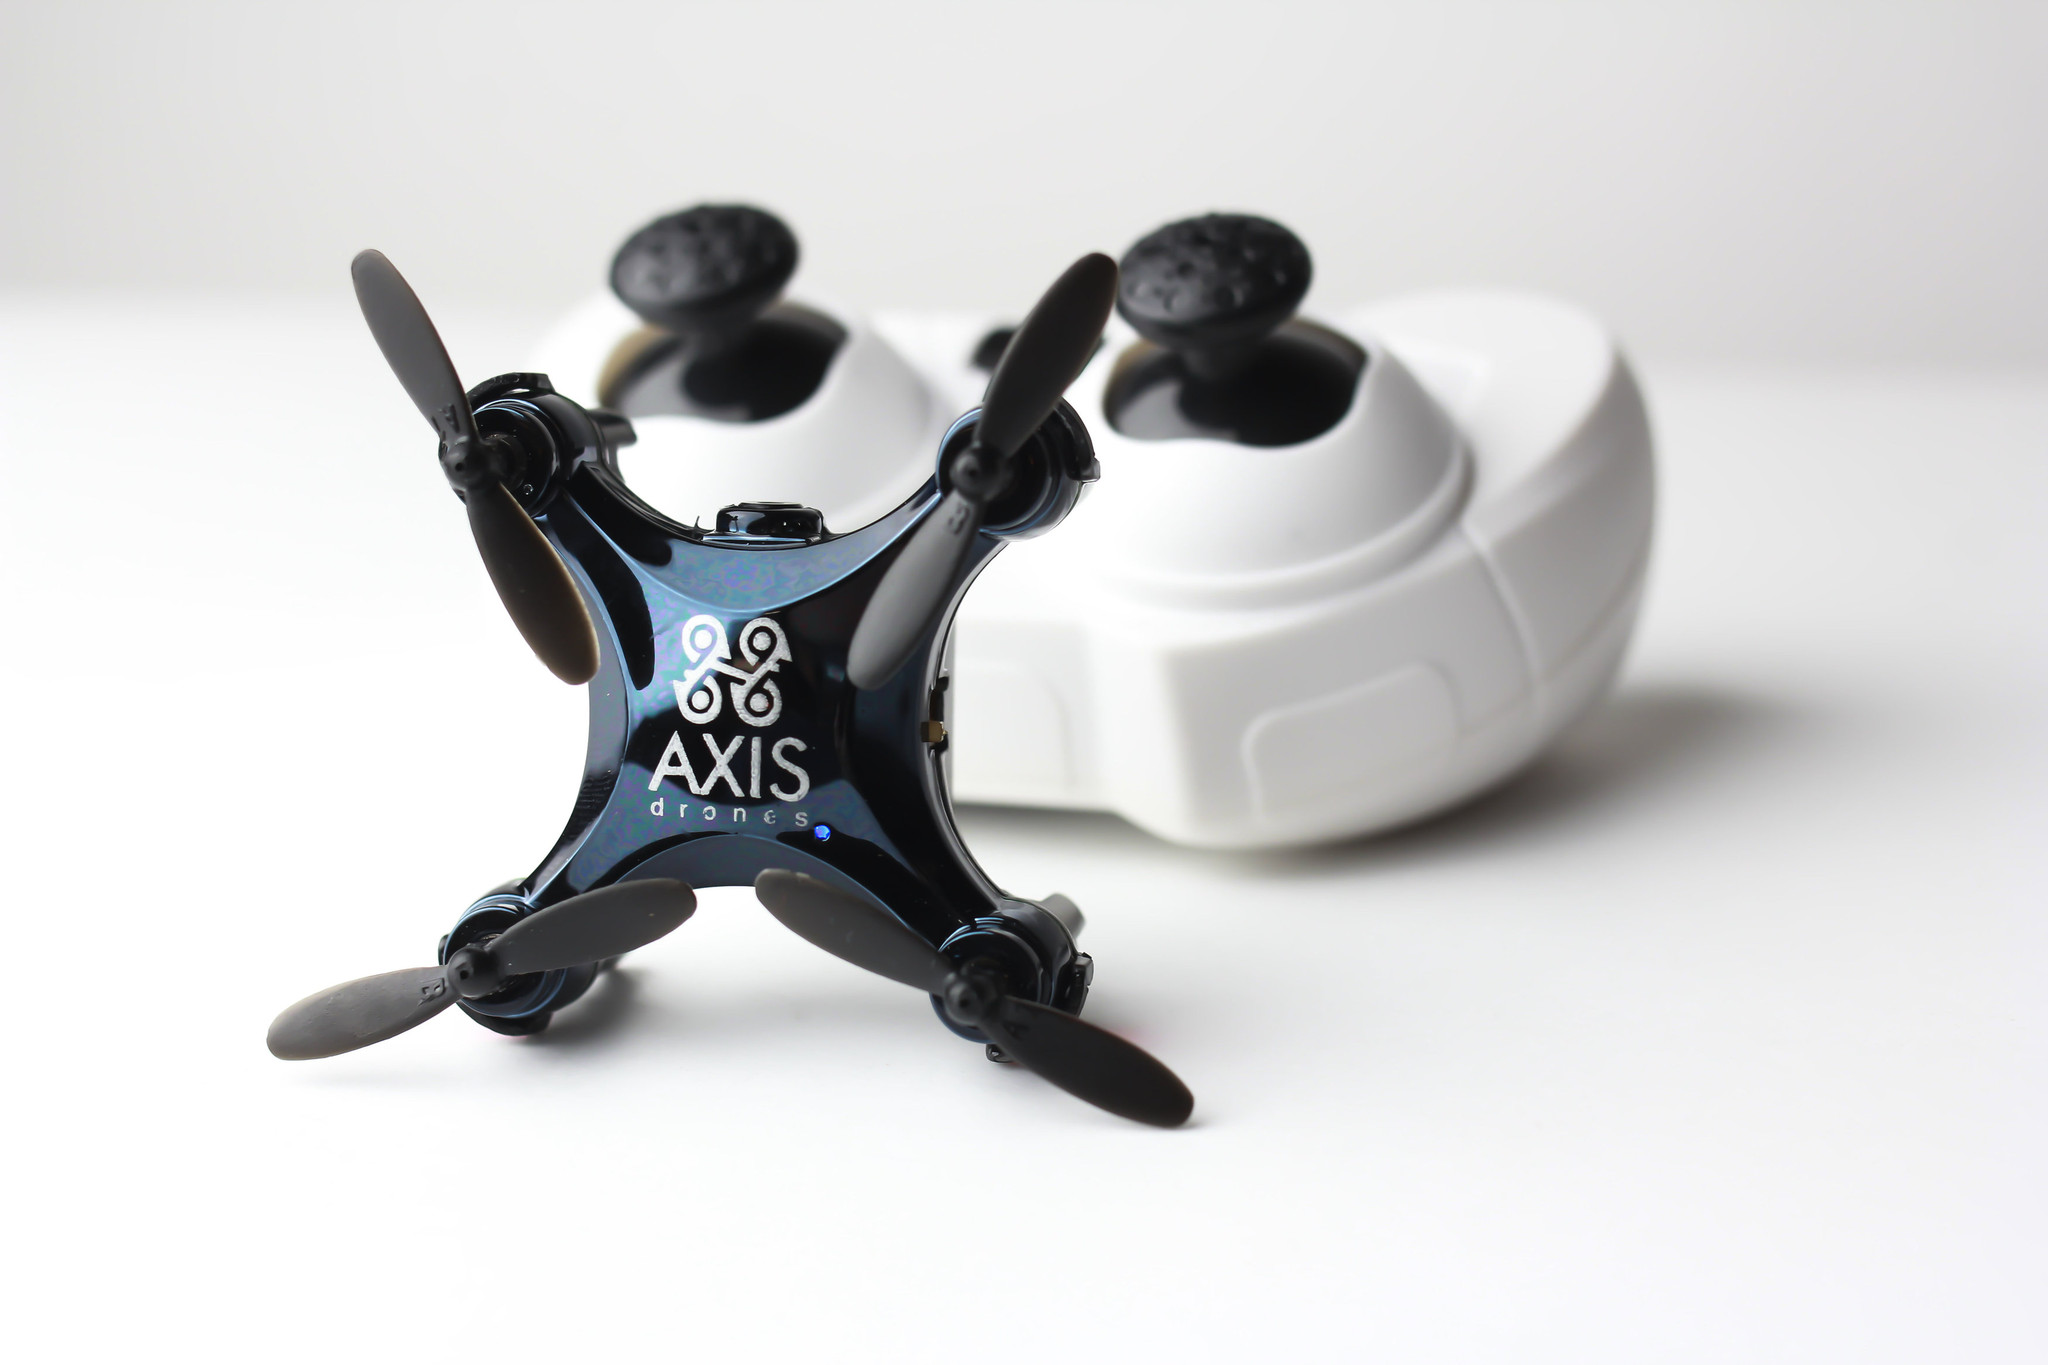 Nejmenší dron na světě se zabudovanou kamerou? Jmenuje se Axis Vidius a koupíte ho za pár korun